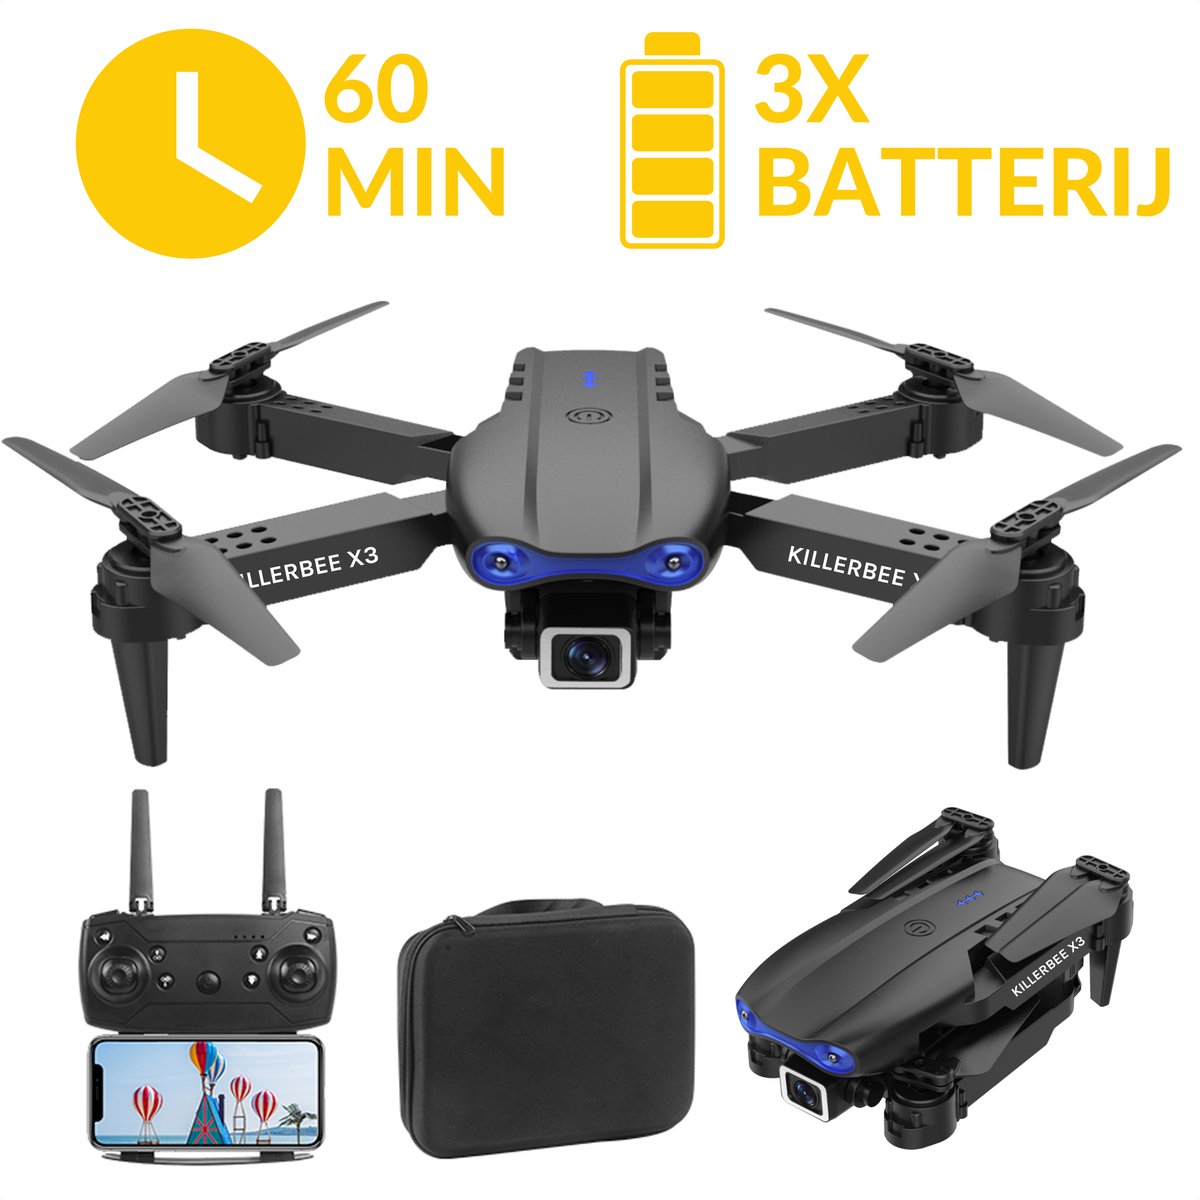 Killerbee X3 Skyhawk Zwart - Quad Drone met camera voor buiten en binnen - Drone voor kinderen en volwassenen - Ultra fly more combo met 60 minuten vliegtijd - inclusief gratis cursus- inclusief opbergtas en 3 accu's.